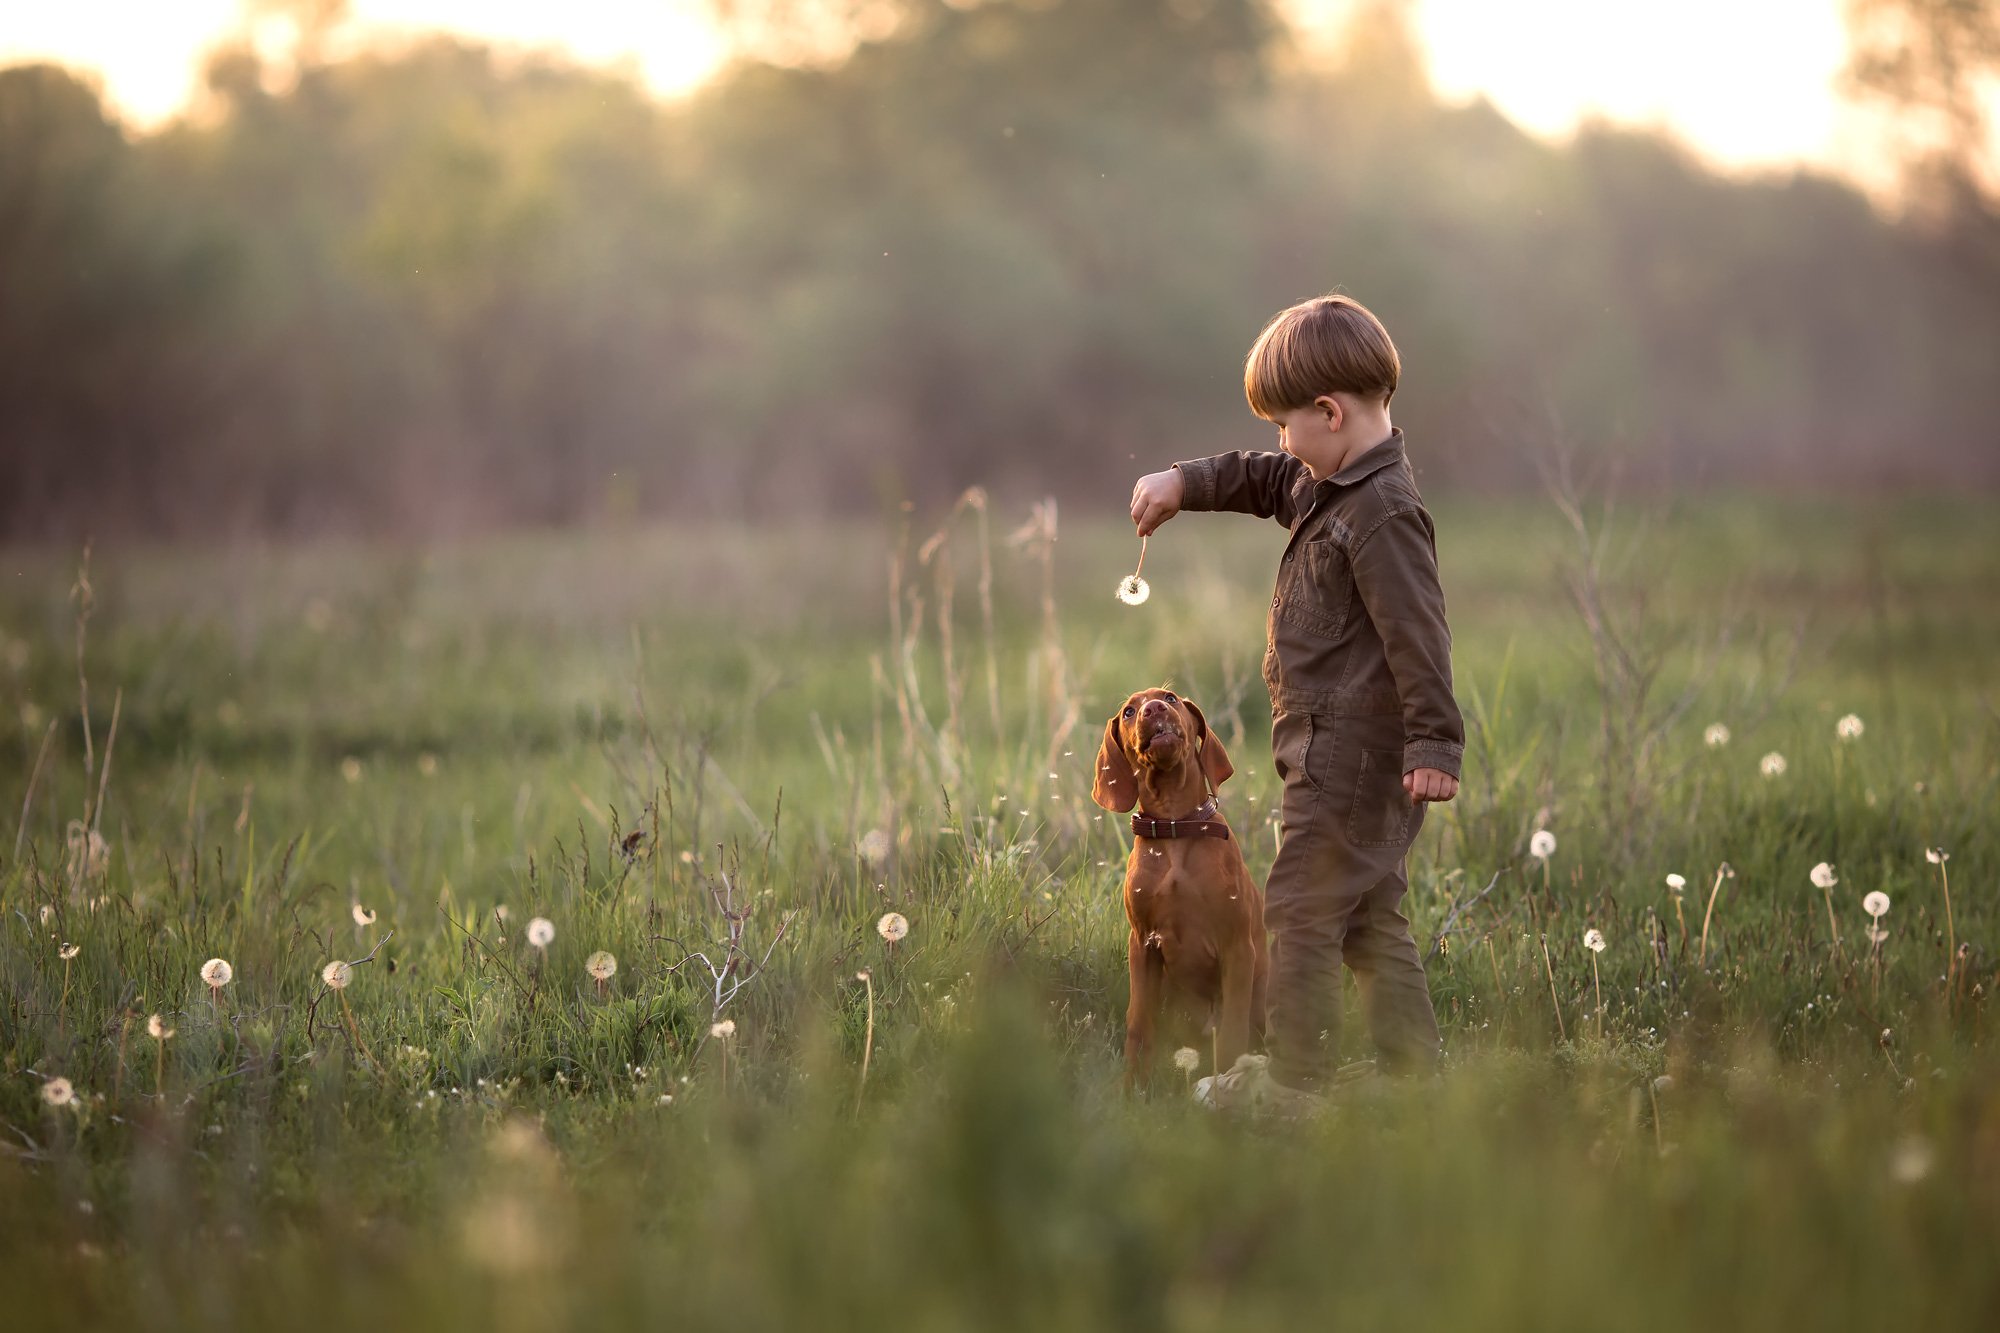 животные собака мальчик ребенок дружба луг зеленый природа воздух деревья трава одуванчики закат кенон игра дрессировка, Евгения Брусенцова